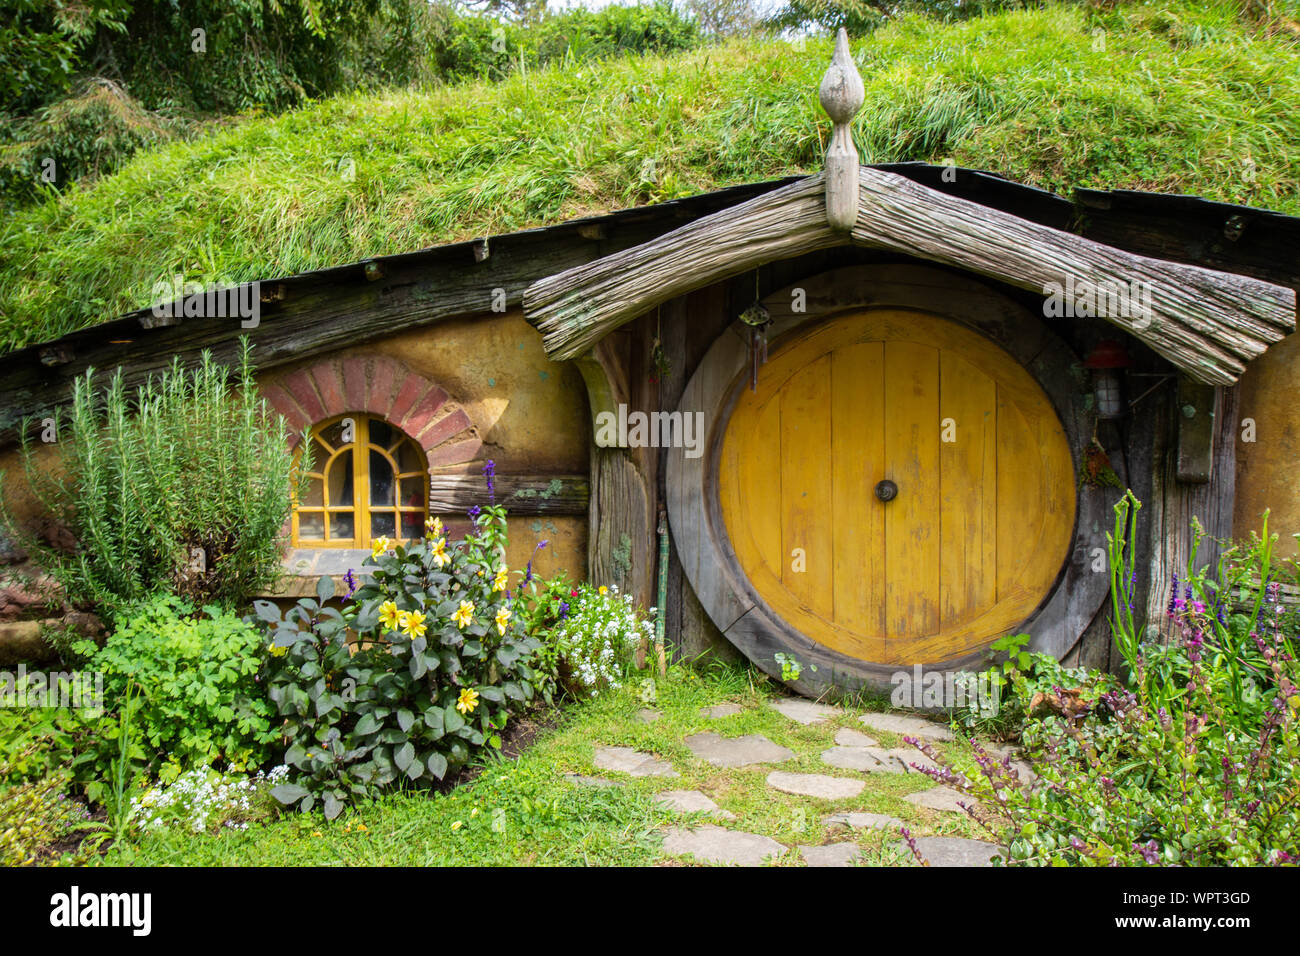 2017, 2 de mayo, de Nueva Zelandia, Matamata, Hobbiton movie set - Puerta del agujero, Hobbit house Foto de stock